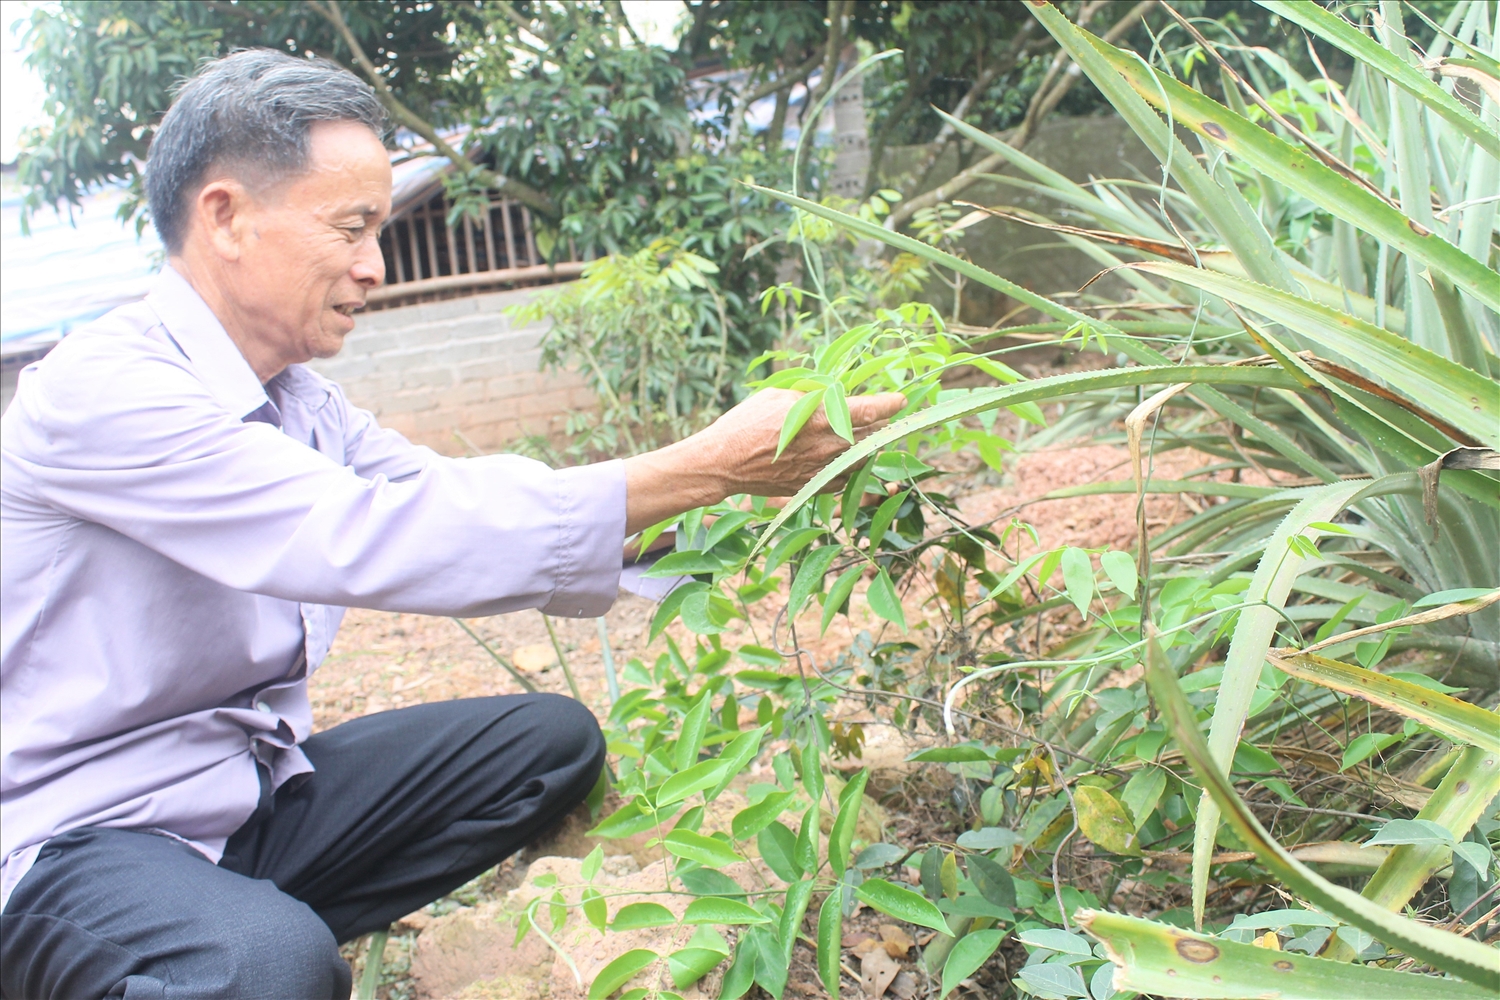 Ông Nguyễn Khắc Lư (thôn Hậu, xã Liên Chung, huyện Tân Yên, Bắc Giang) chăm sóc những khóm sâm Nam mọc xen lẫn những bụi cây dứa